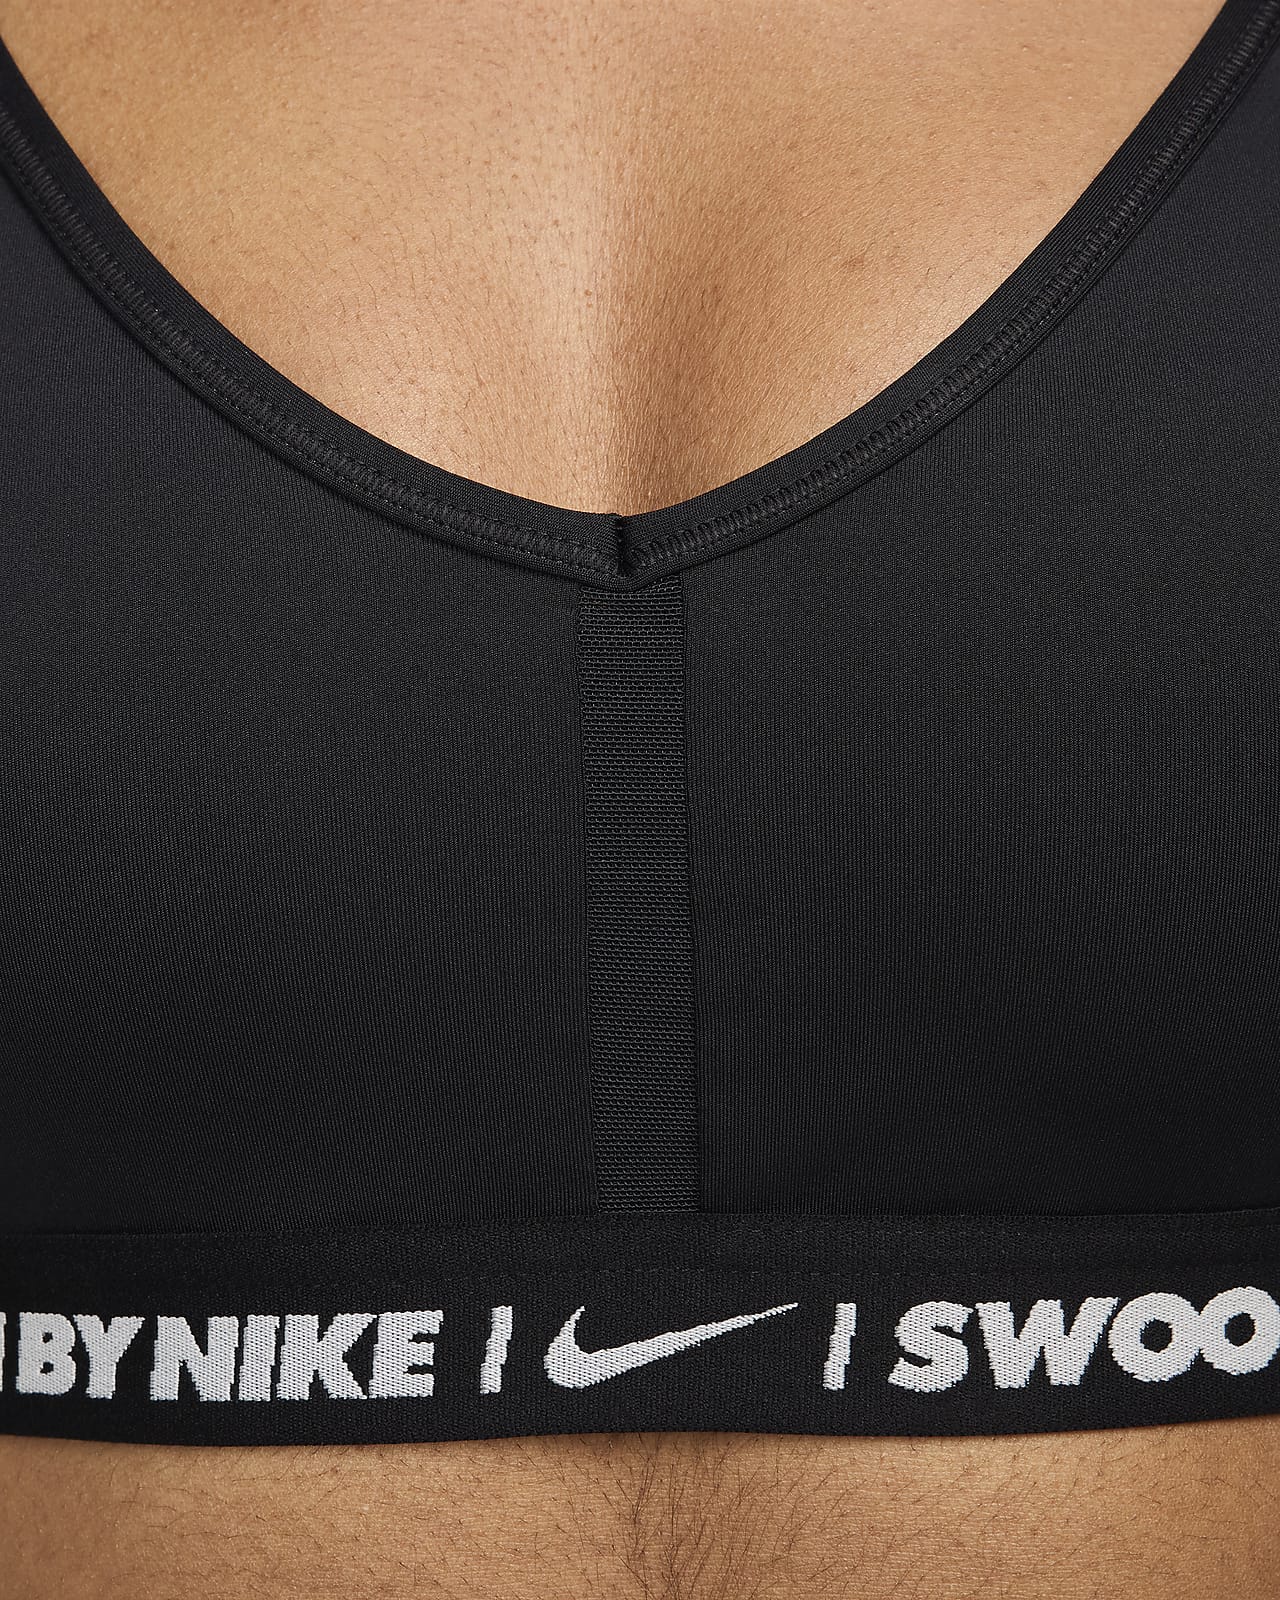 Nike Indy sports-BH med V-hals og lett støtte til dame. Nike NO